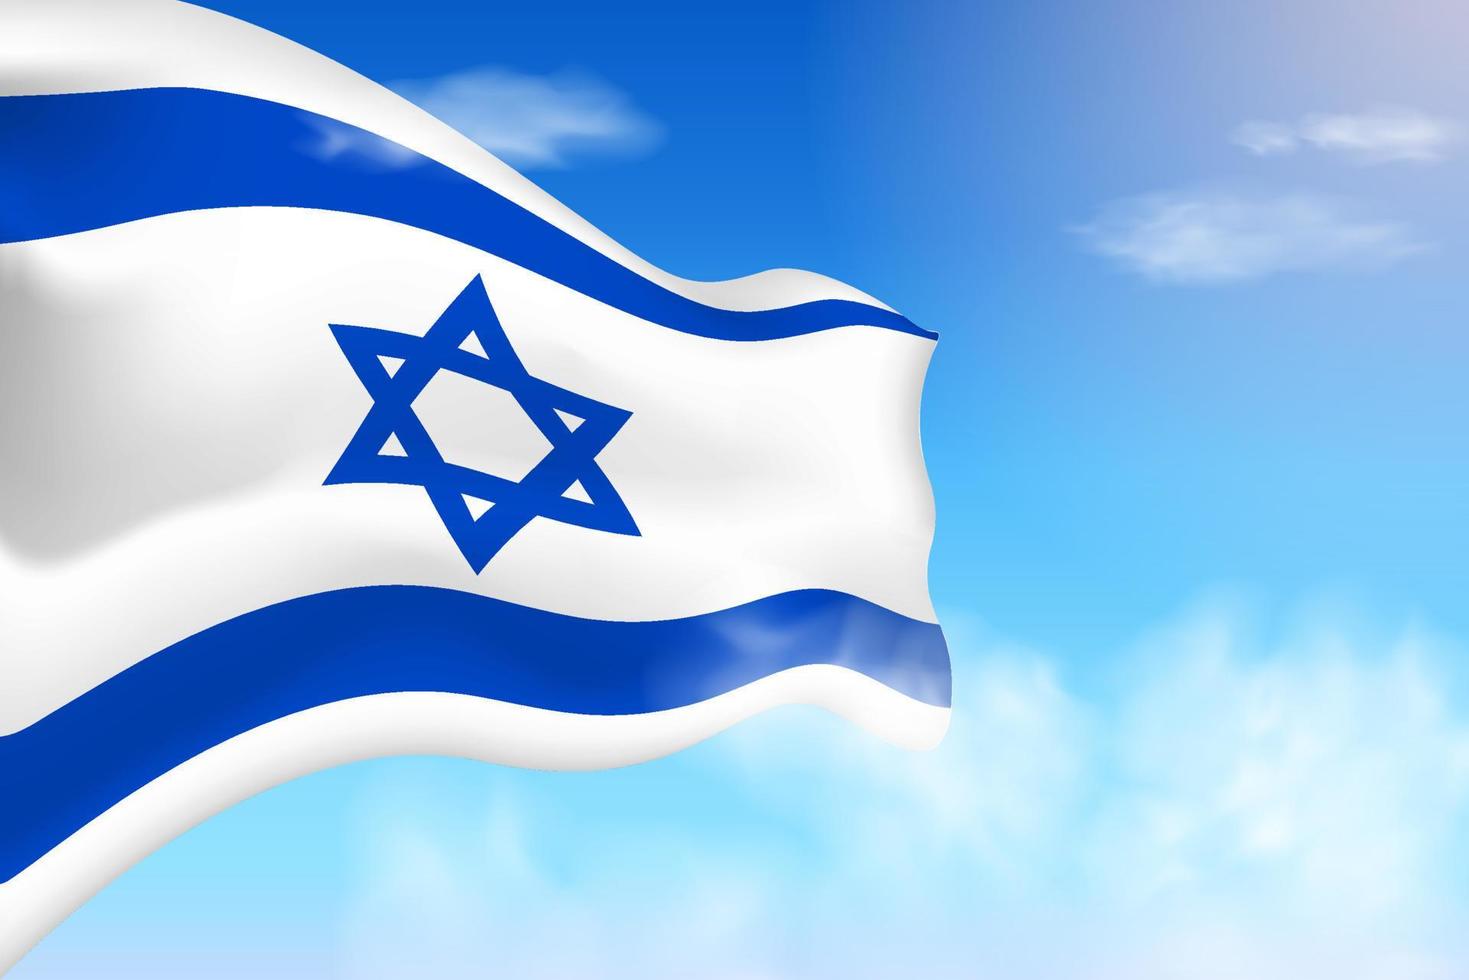 bandiera israeliana tra le nuvole. bandiera vettoriale che sventola nel cielo. illustrazione realistica della bandiera della giornata nazionale. vettore di cielo blu.